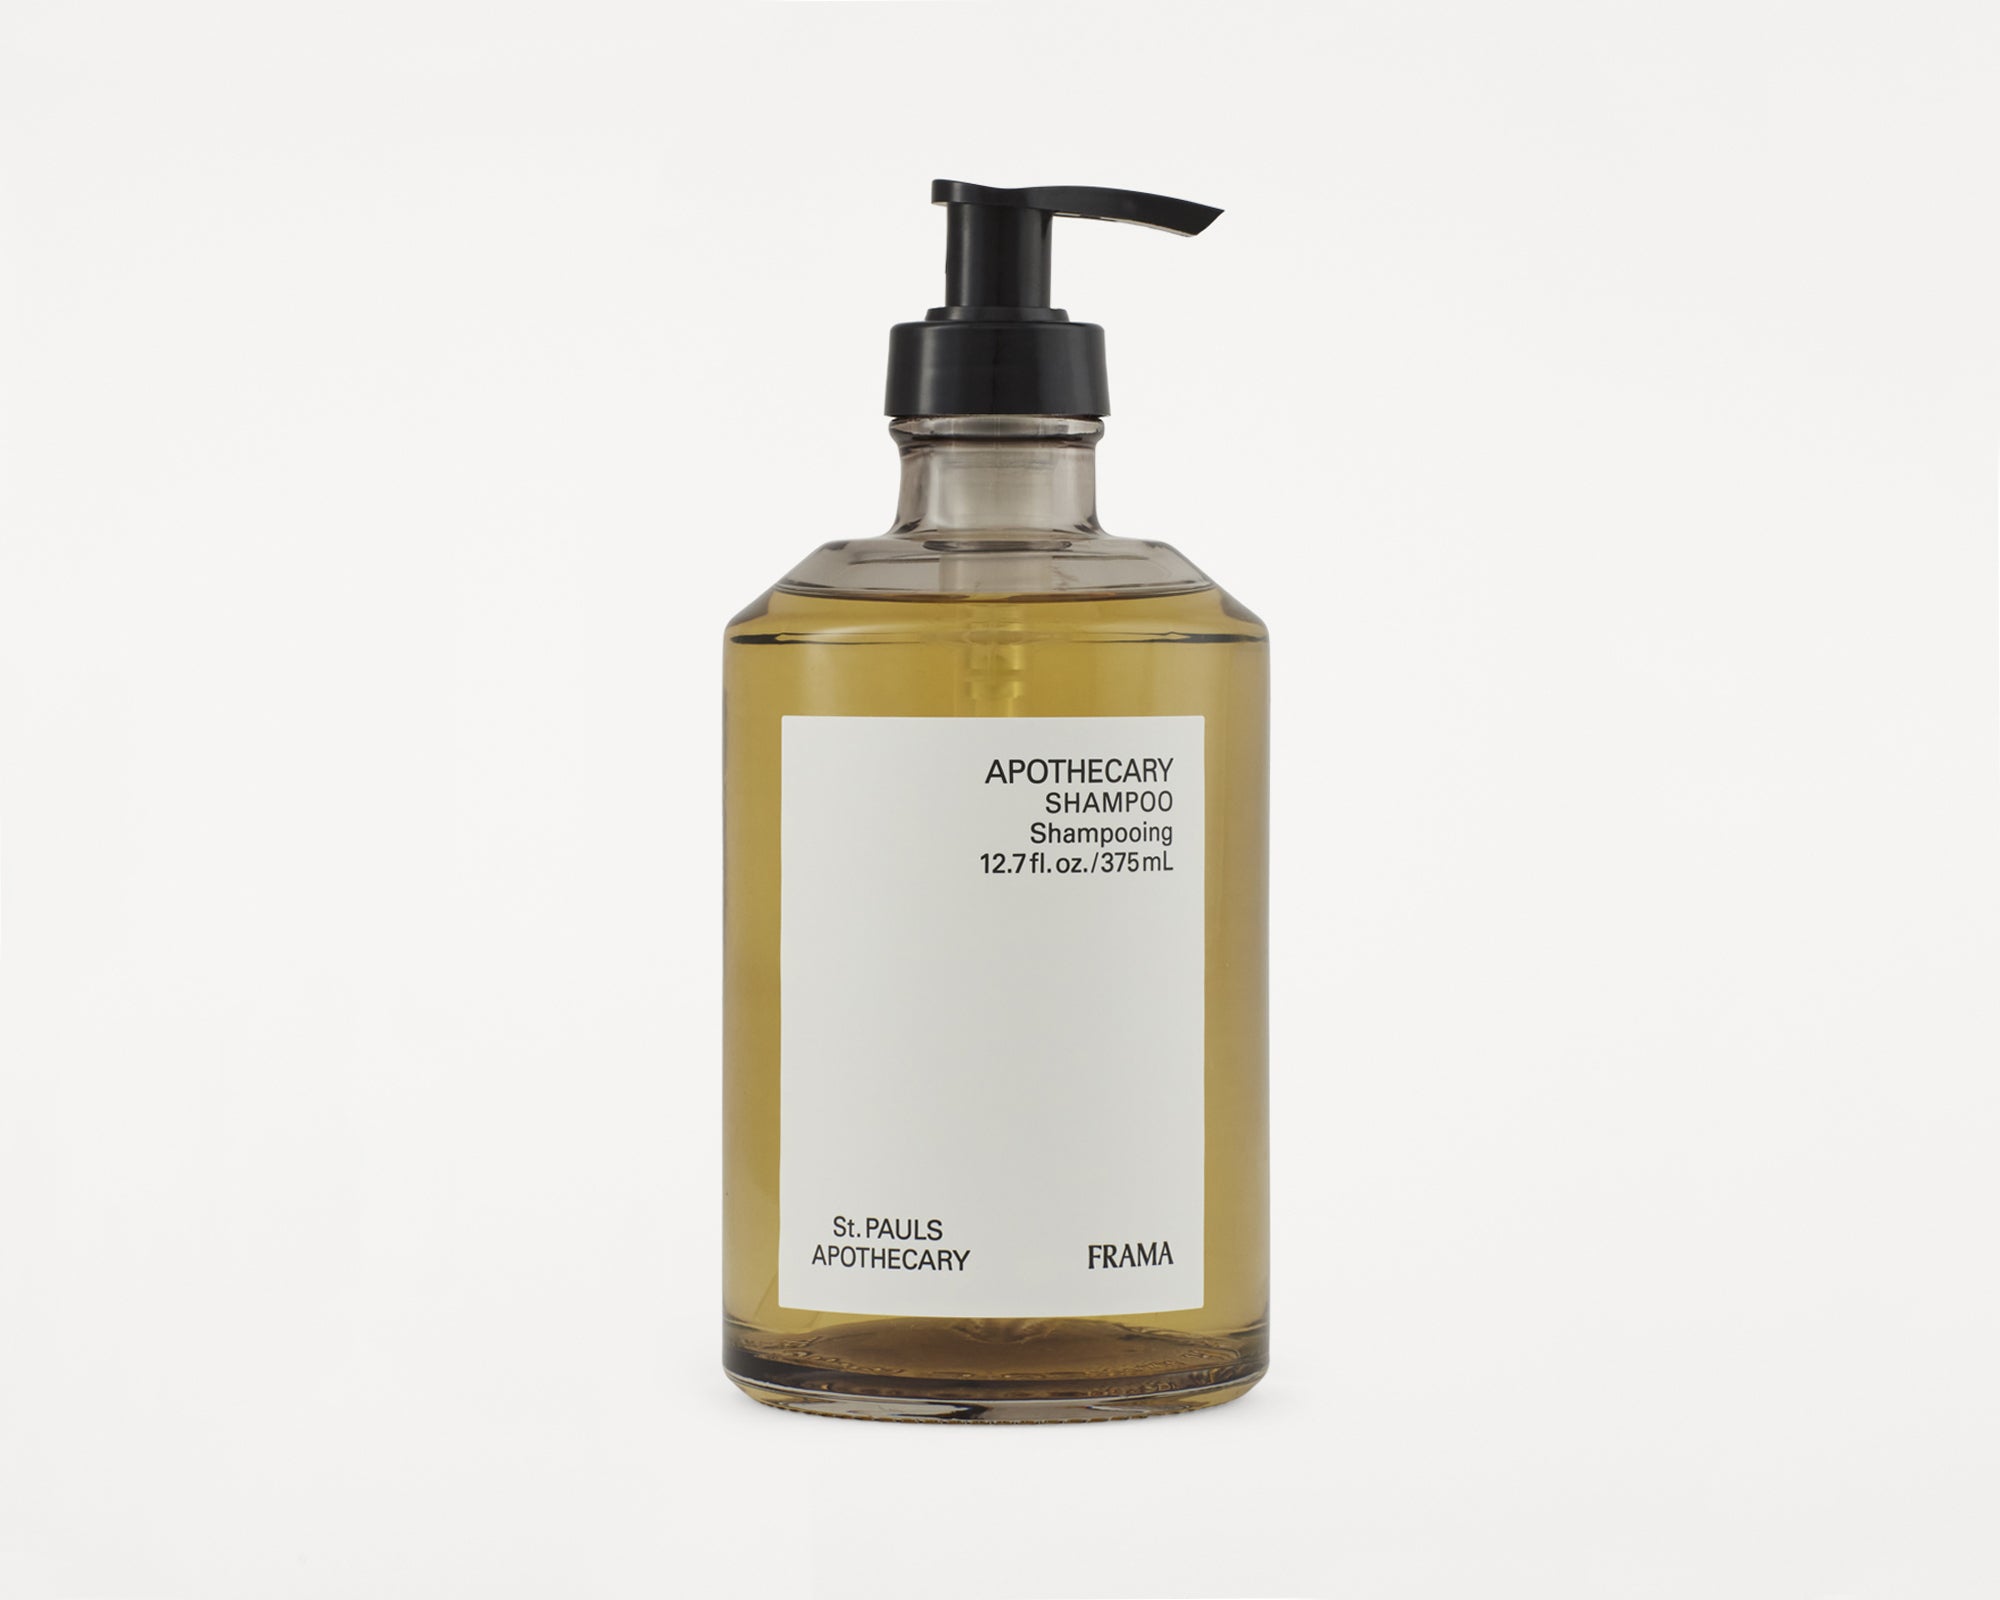 Shampoo | Apothecary | 375 – FRAMA